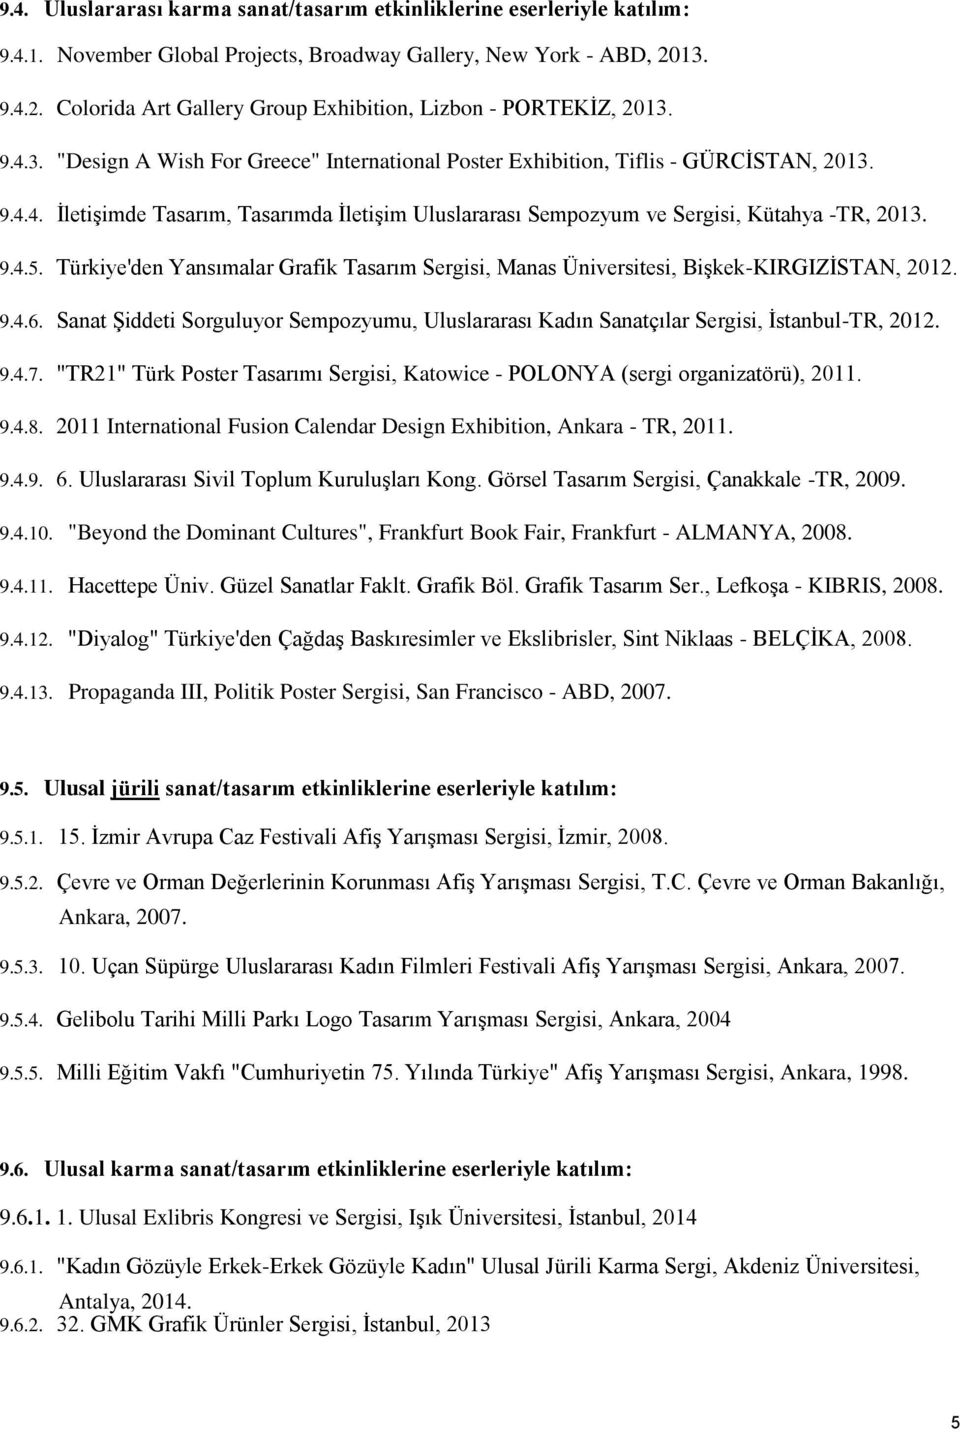 9.4.5. Türkiye'den Yansımalar Grafik Tasarım Sergisi, Manas Üniversitesi, Bişkek-KIRGIZİSTAN, 2012. 9.4.6.